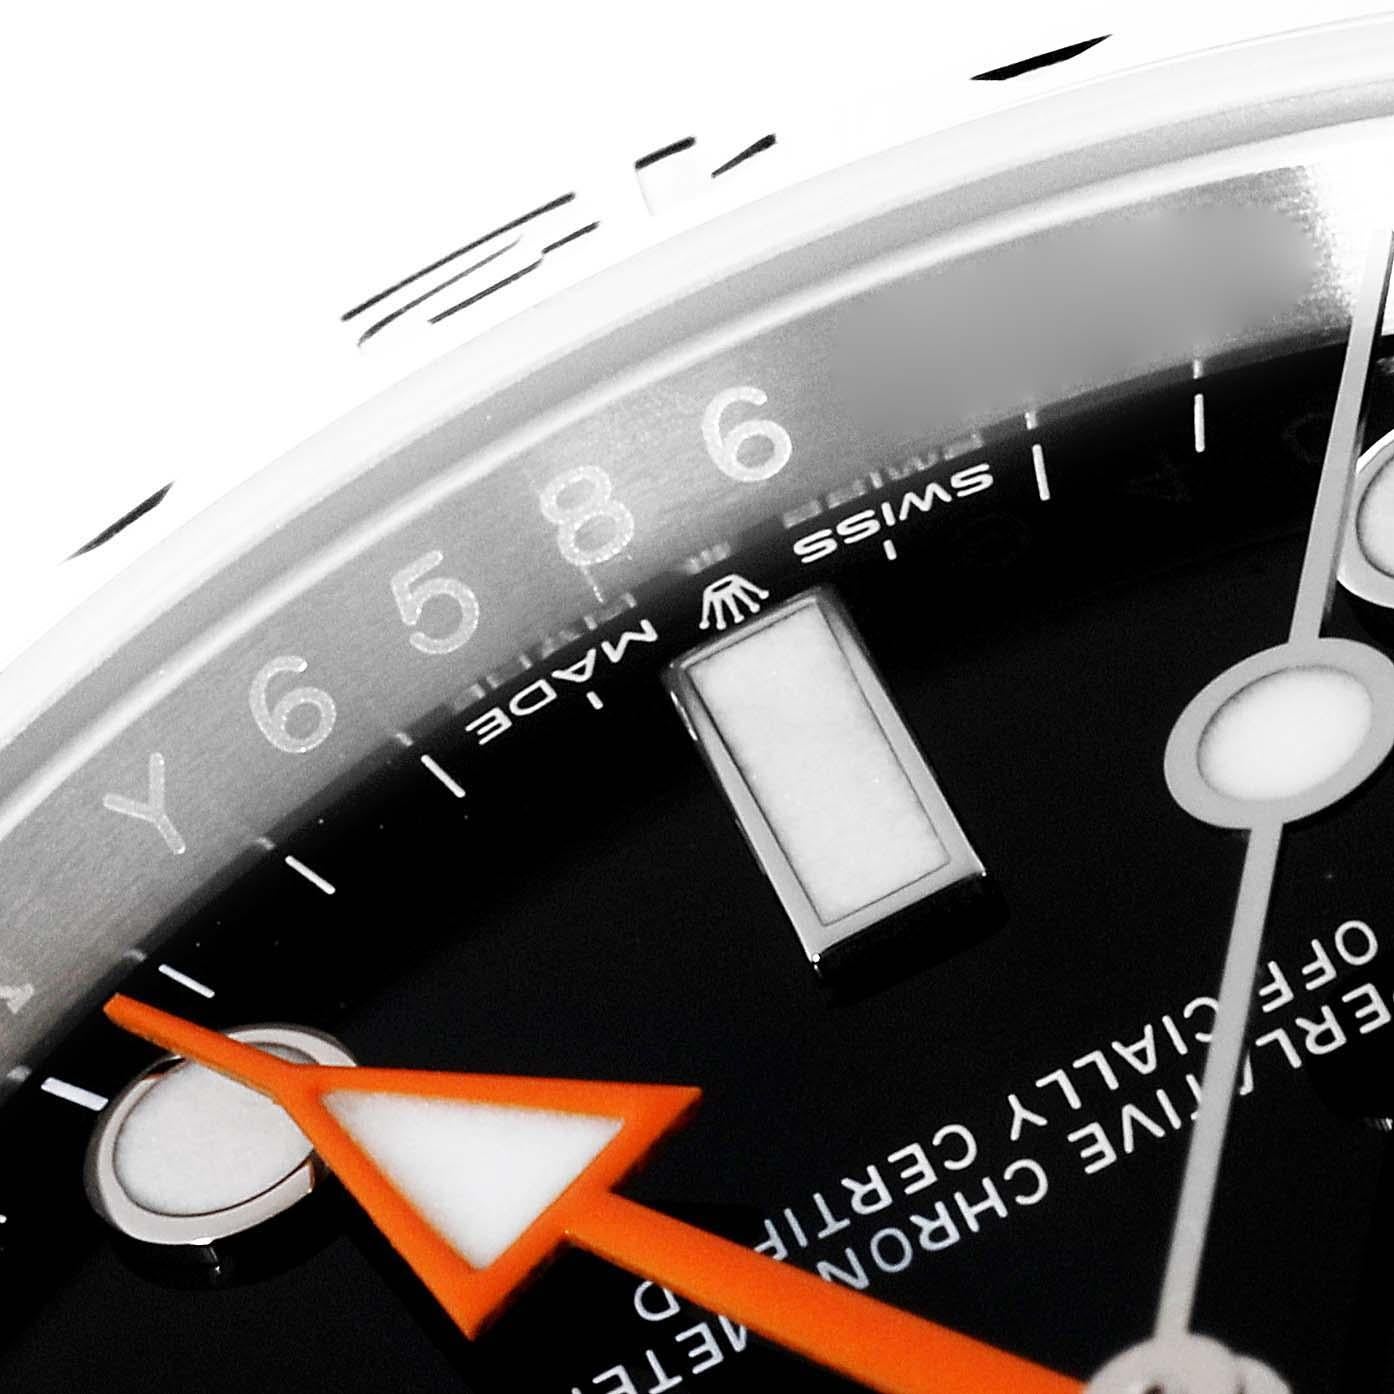 Rolex Explorer II 42mm Black Dial Steel Mens Watch 226570 Unworn. Mouvement à remontage automatique certifié officiellement chronomètre. Boîtier en acier inoxydable de 42 mm de diamètre. Logo Rolex sur la couronne. Lunette en acier inoxydable avec